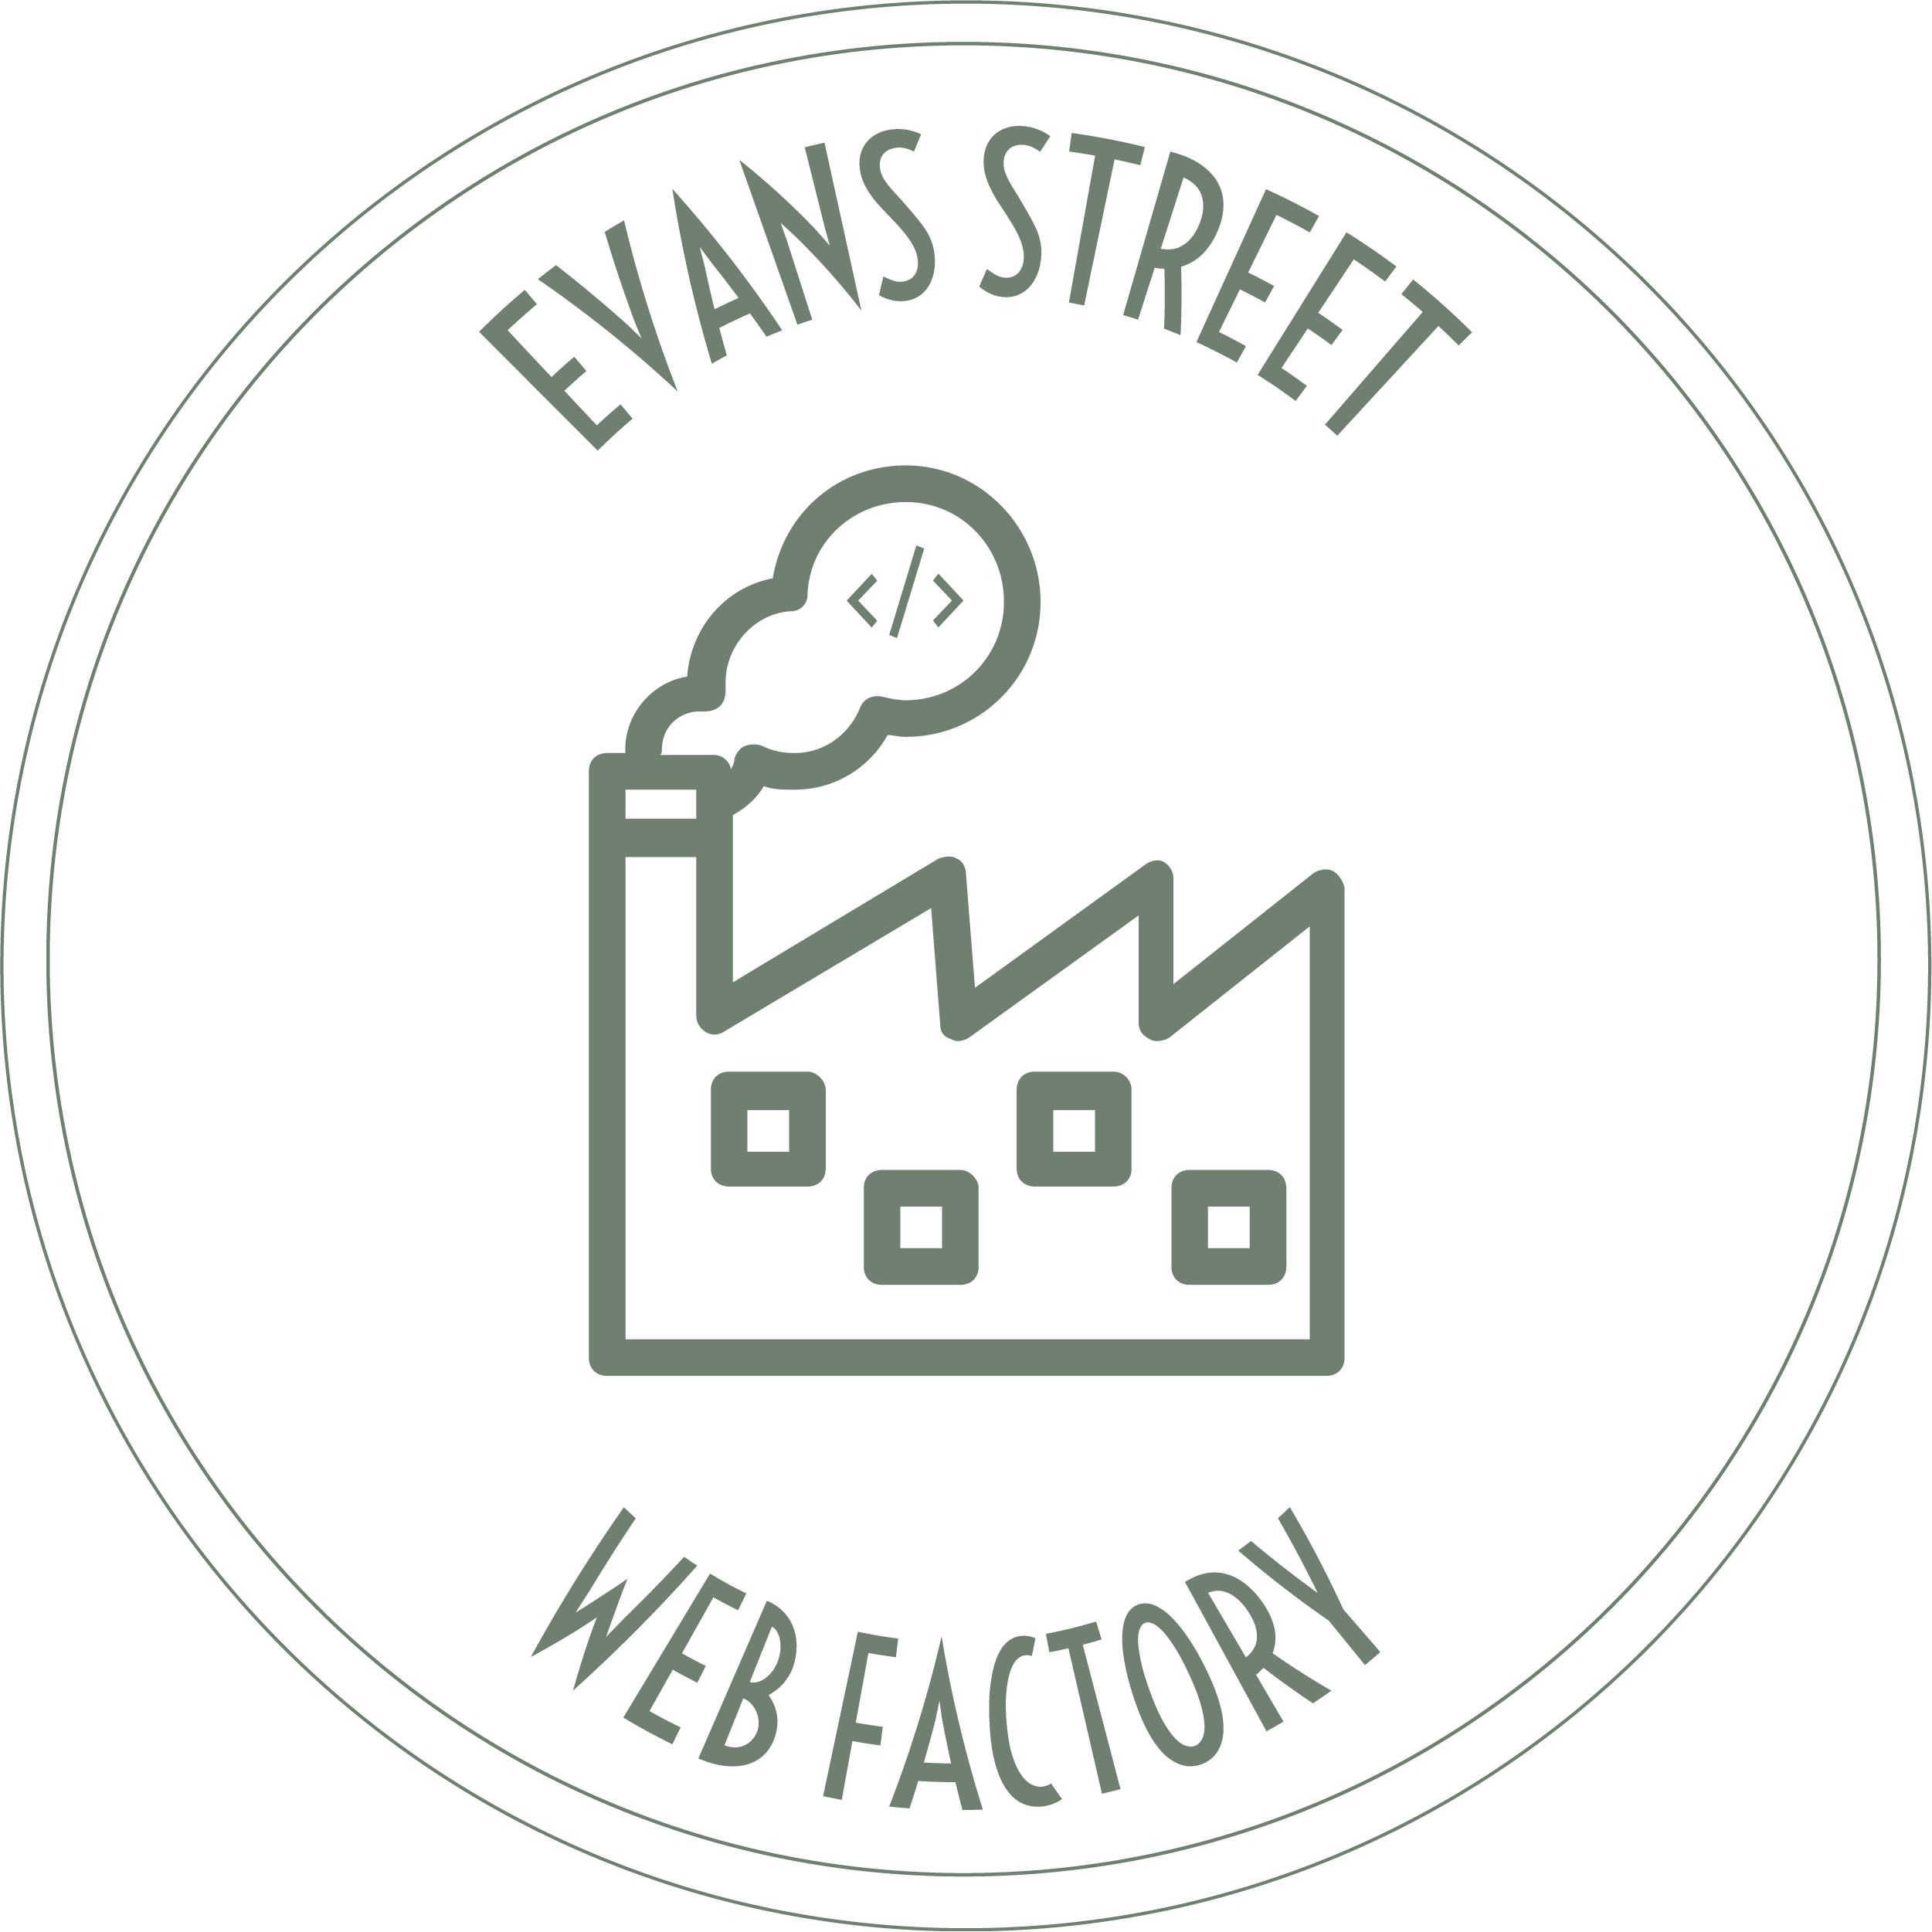 evansstreetwebfactory